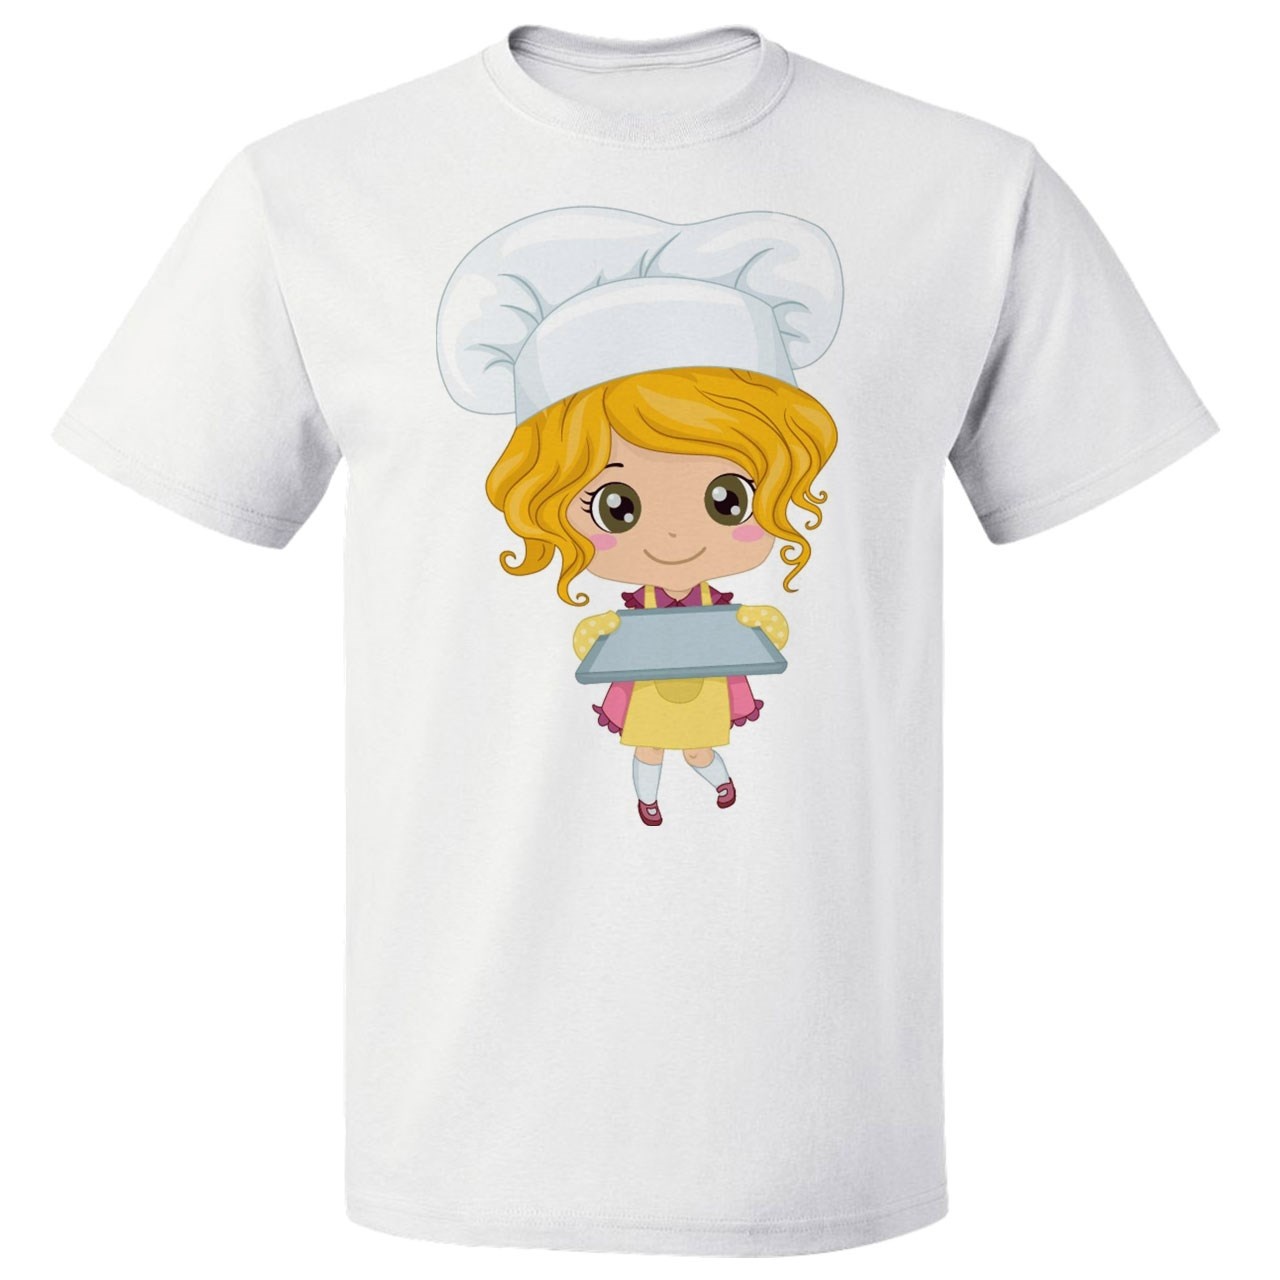 تی شرت  پارس طرح کارتونی دختر آشپز کد 7113